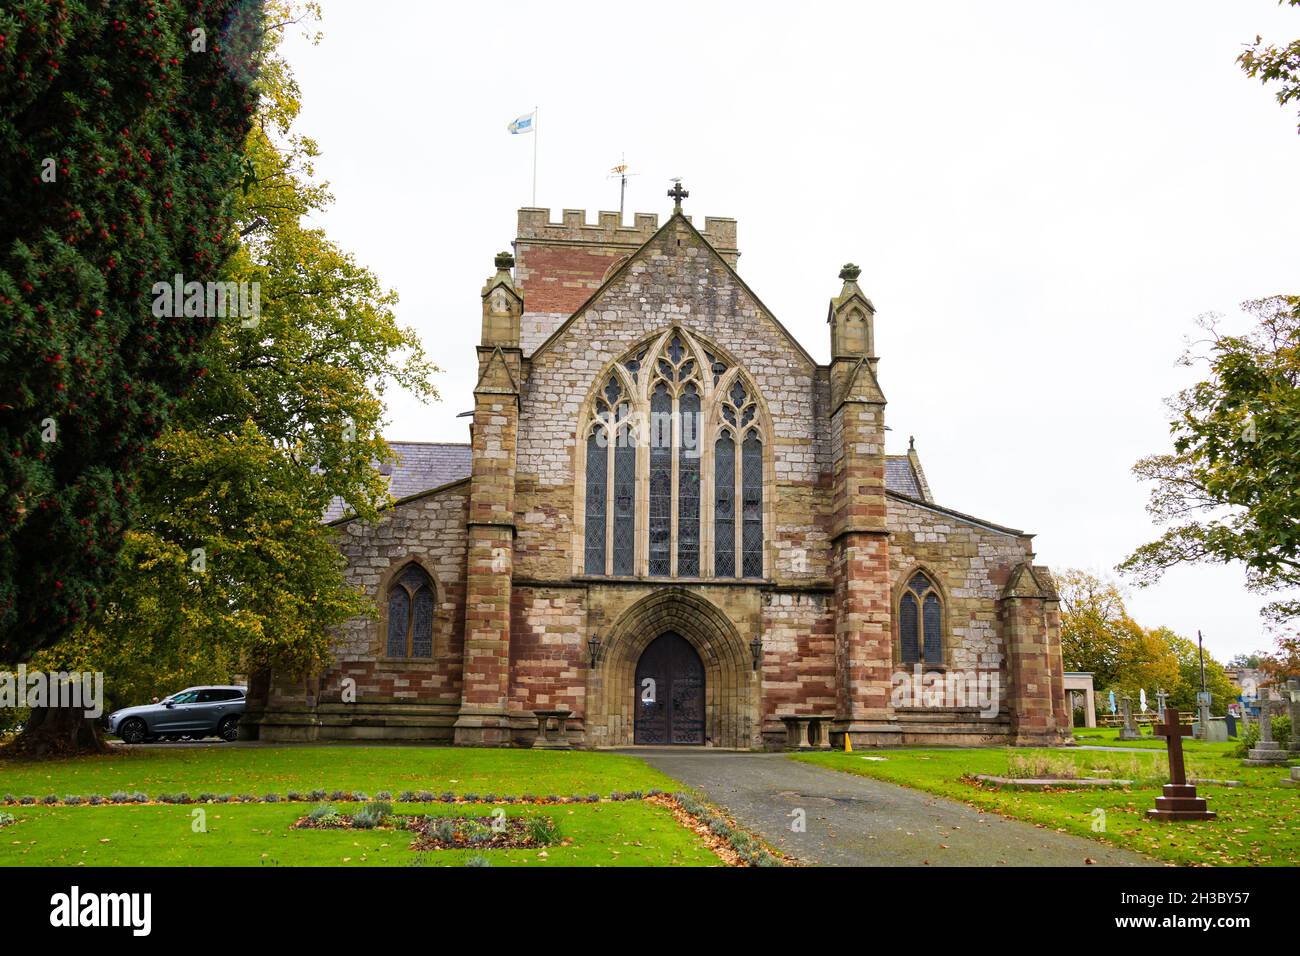 Deuxième plus petite cathédrale de Britains.Cathédrale d'Asaph, St Asaph.Denbighshire, pays de Galles. Banque D'Images